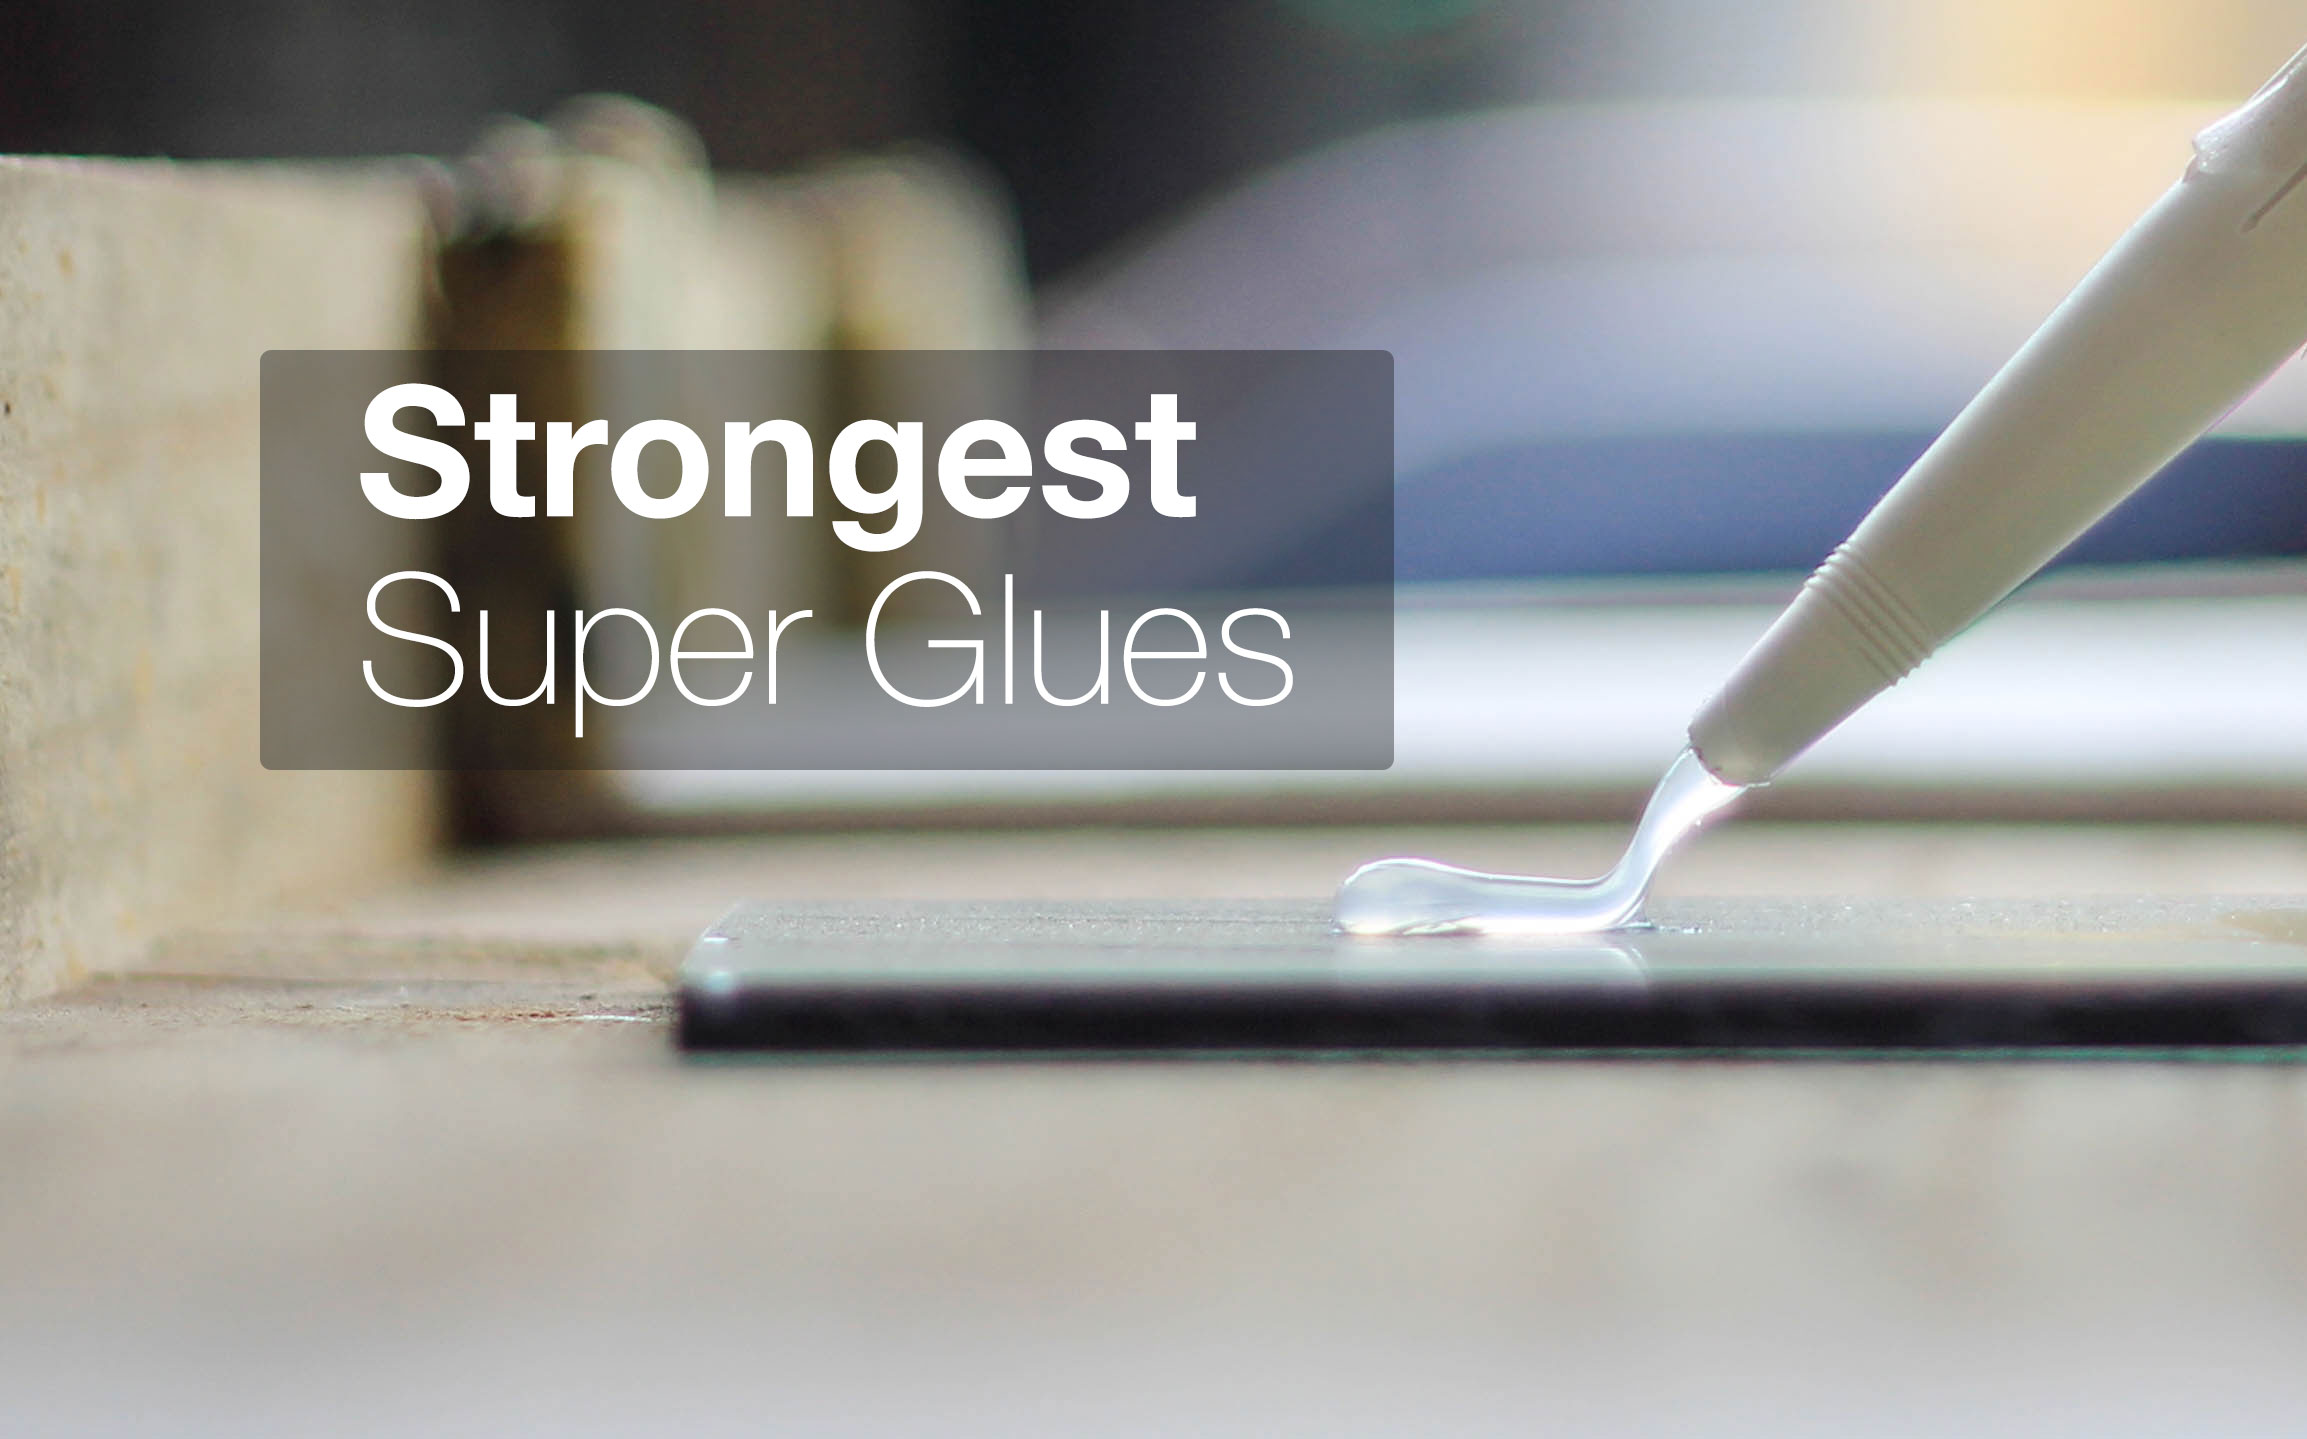 Best Super Glue